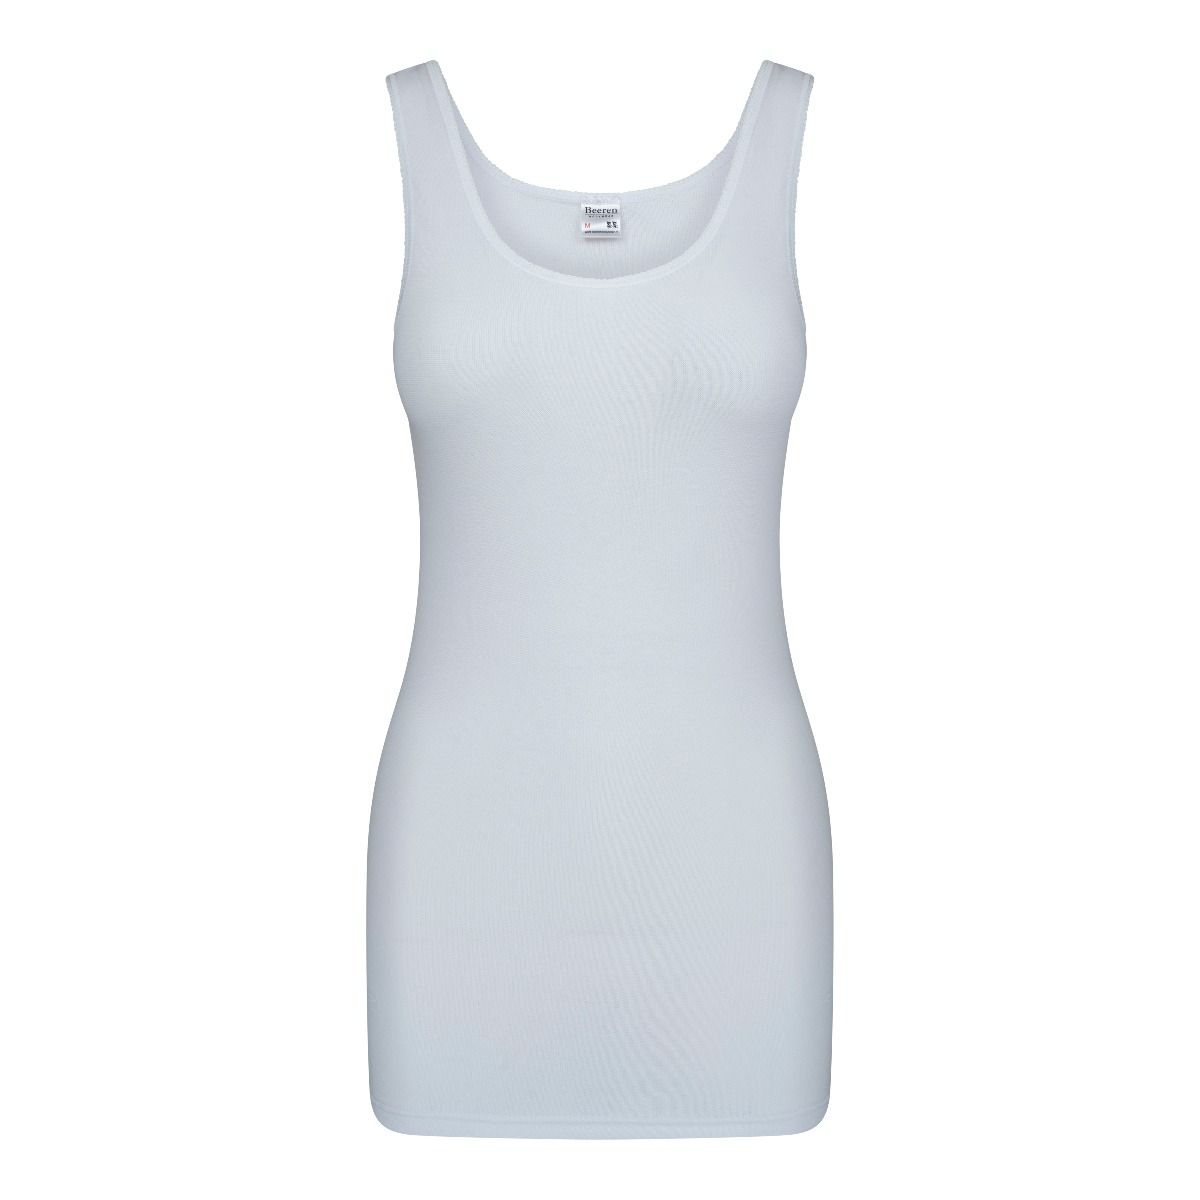 Dames hemd wit-Beeren dames hemden online